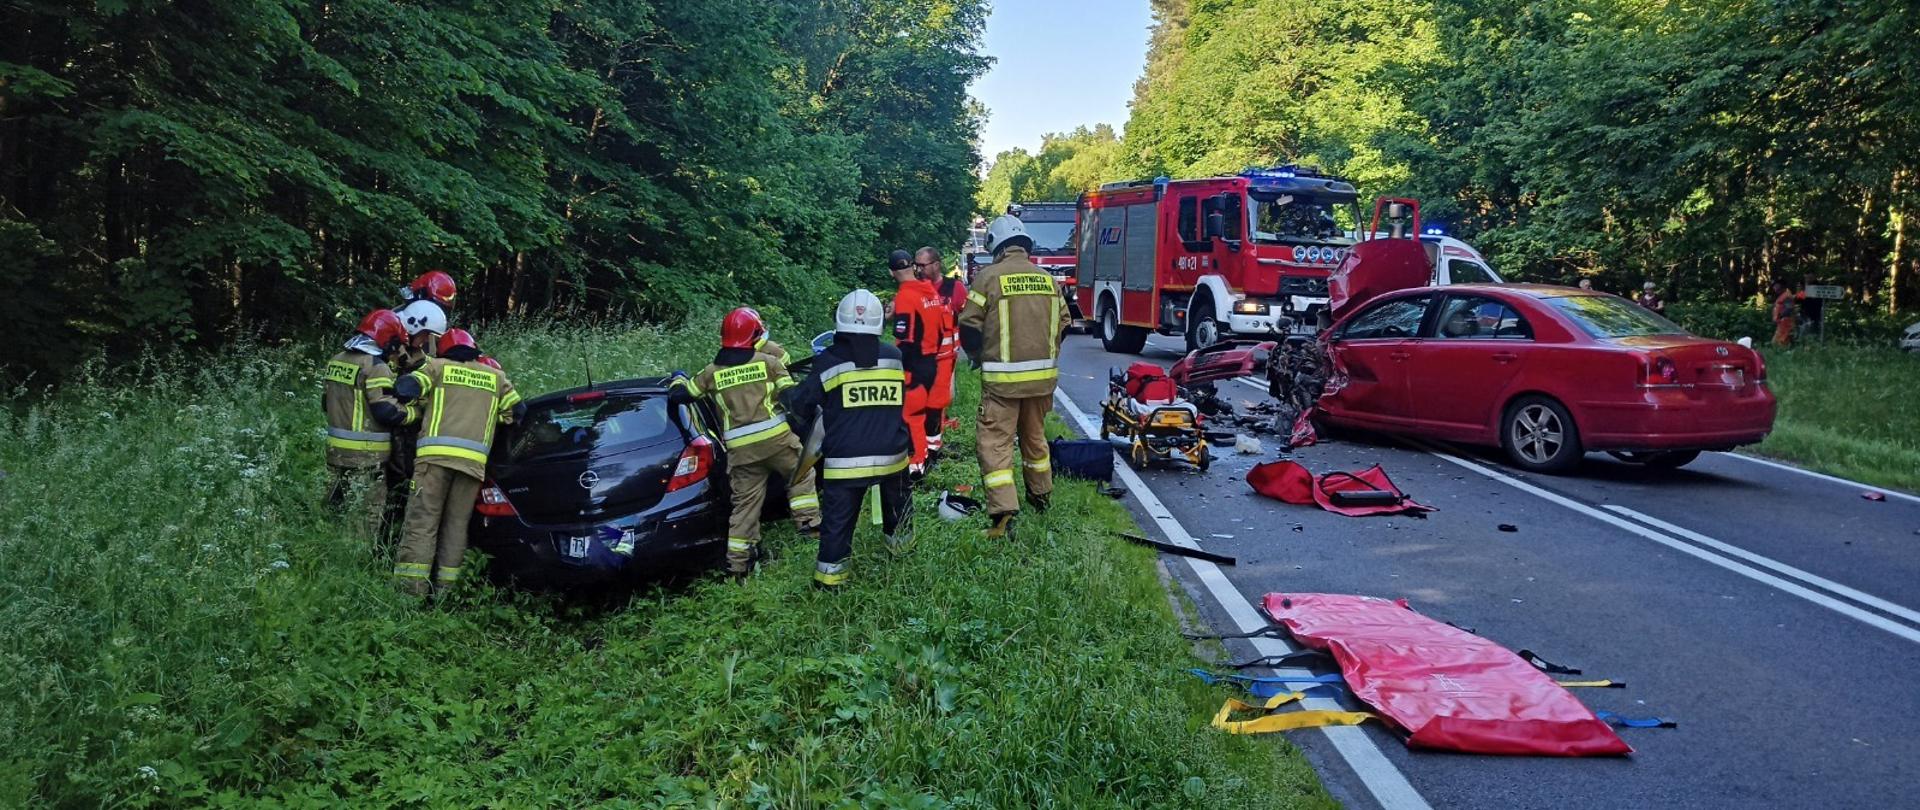 Zdjęcie przedstawia wypadek dwóch samochodów osobowych oraz współprace służb ratowniczych straży pożarnej oraz pogotowia ratunkowego podczas wydobywania osoby poszkodowanej z wraku pojazdu.